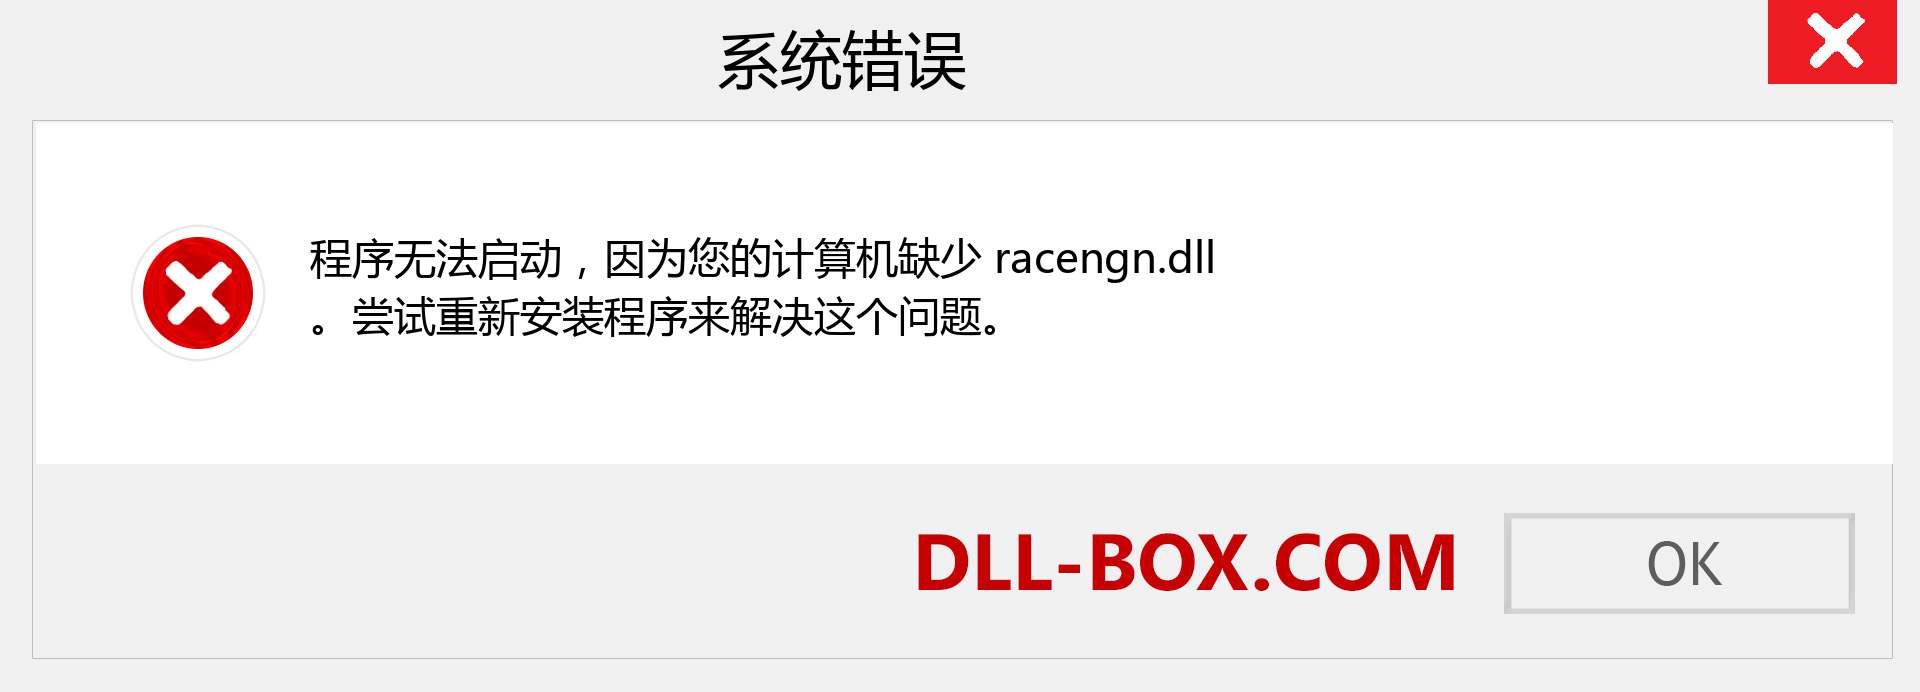 racengn.dll 文件丢失？。 适用于 Windows 7、8、10 的下载 - 修复 Windows、照片、图像上的 racengn dll 丢失错误